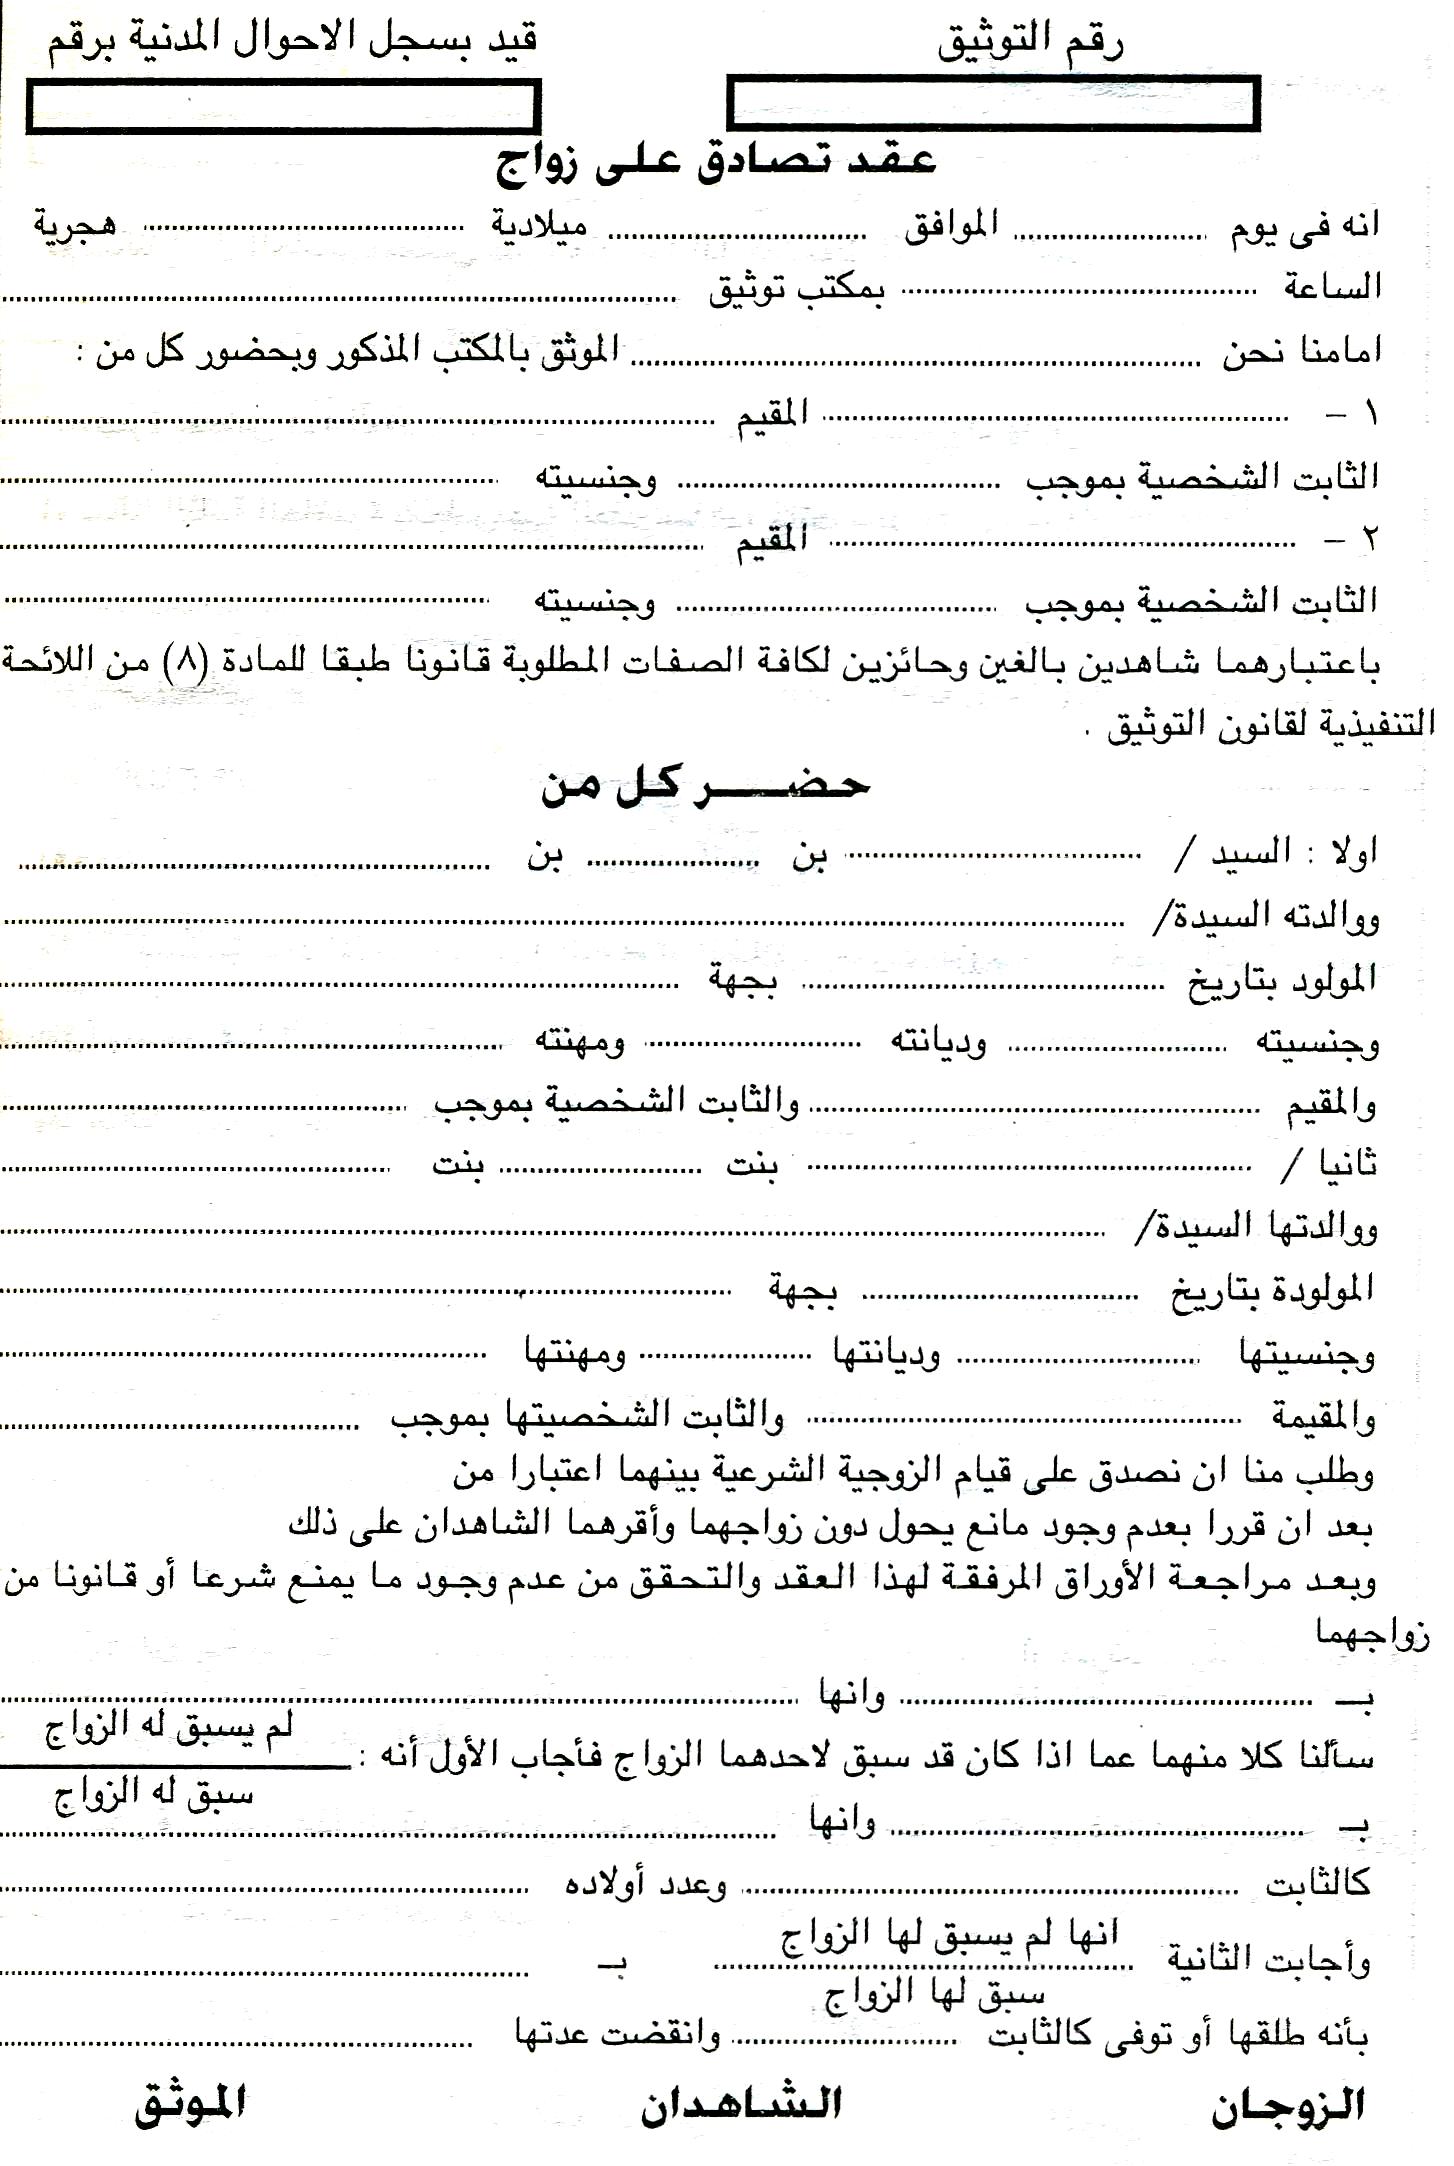 الأردن 24 : اعفاء عقود الزواج المبرمة من الغرامة القانونية 